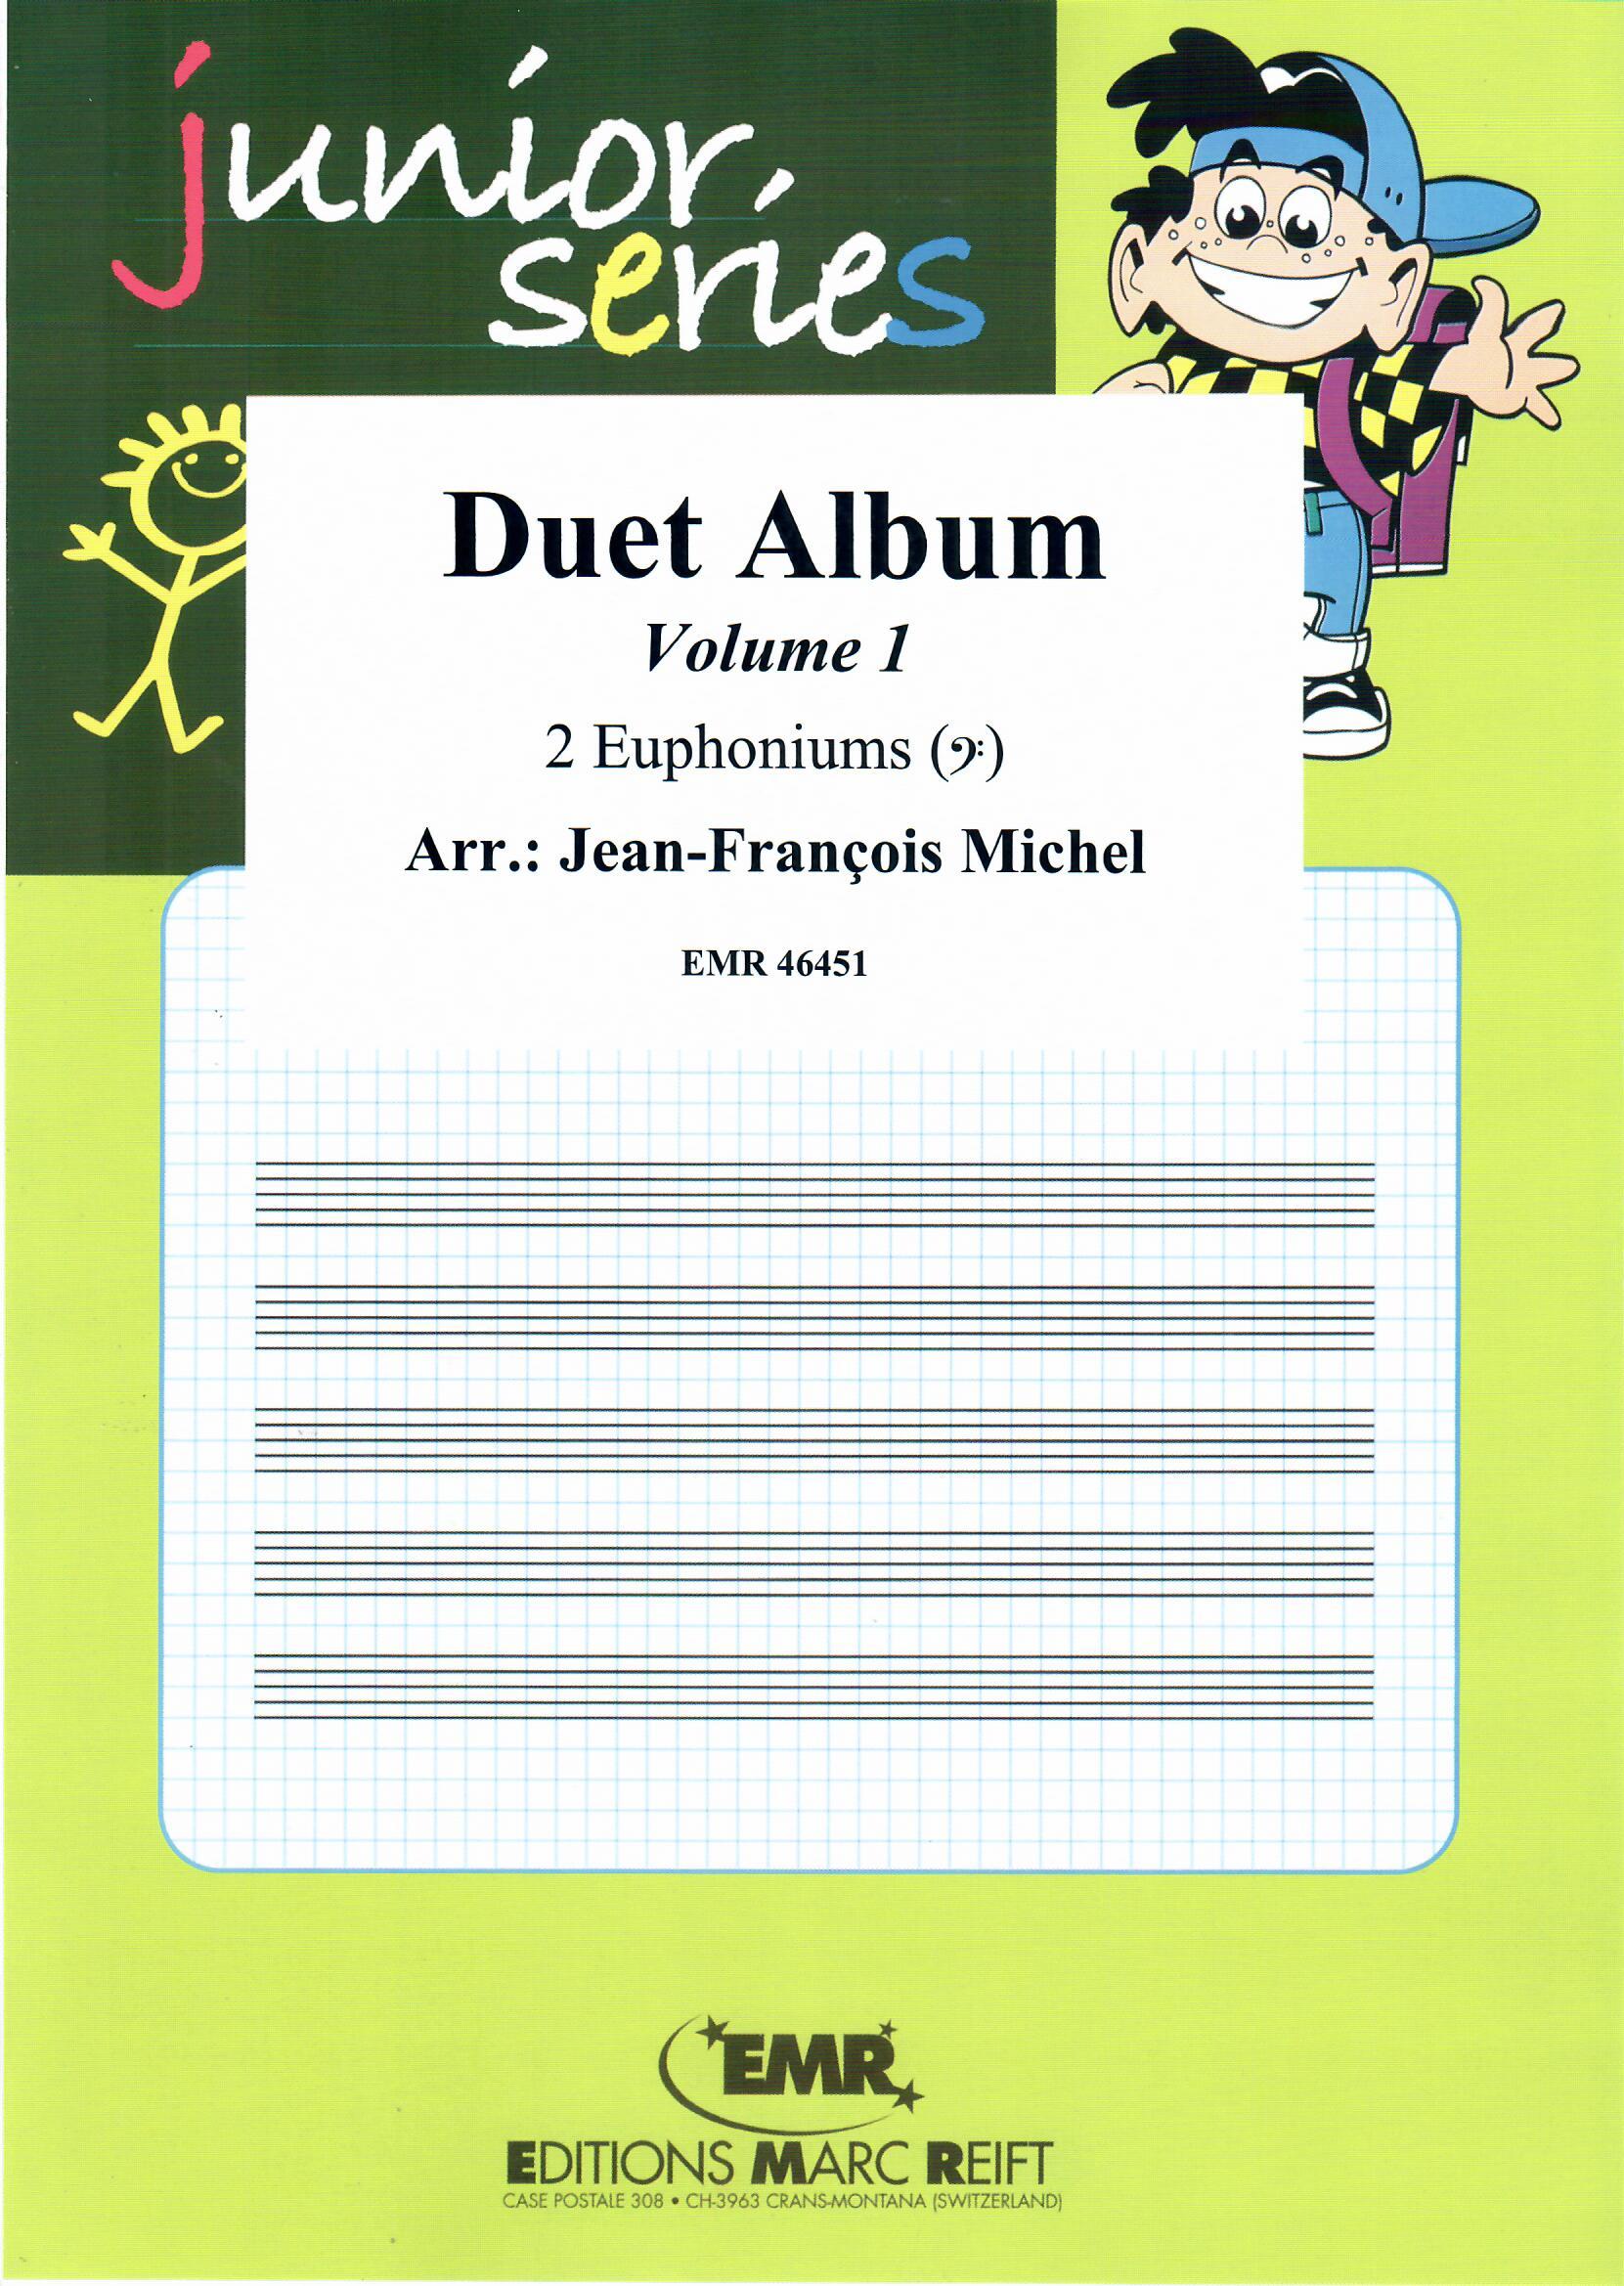 DUET ALBUM VOL. 1 - Euphonium Duet